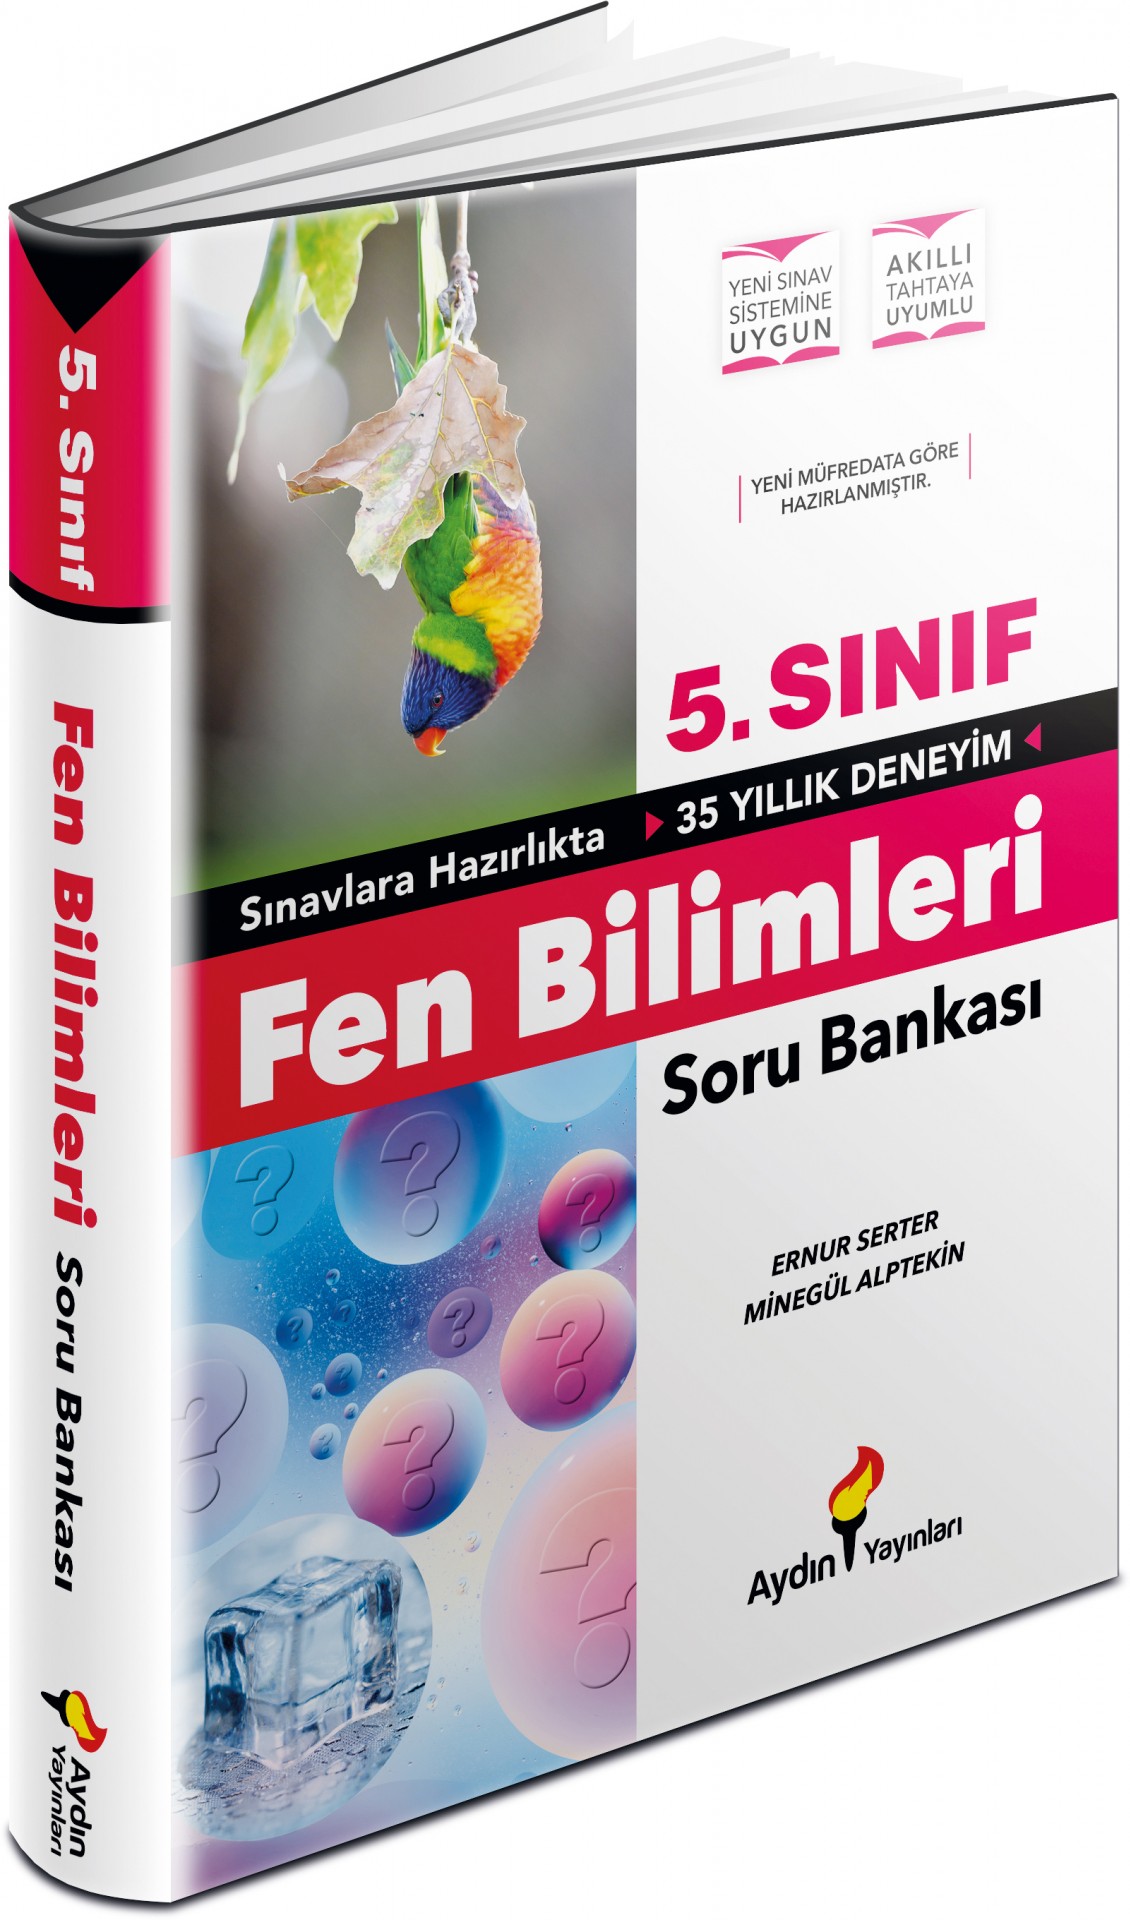 Aydın Yayınları 5. Sınıf Fen Bilimleri Soru Bankası